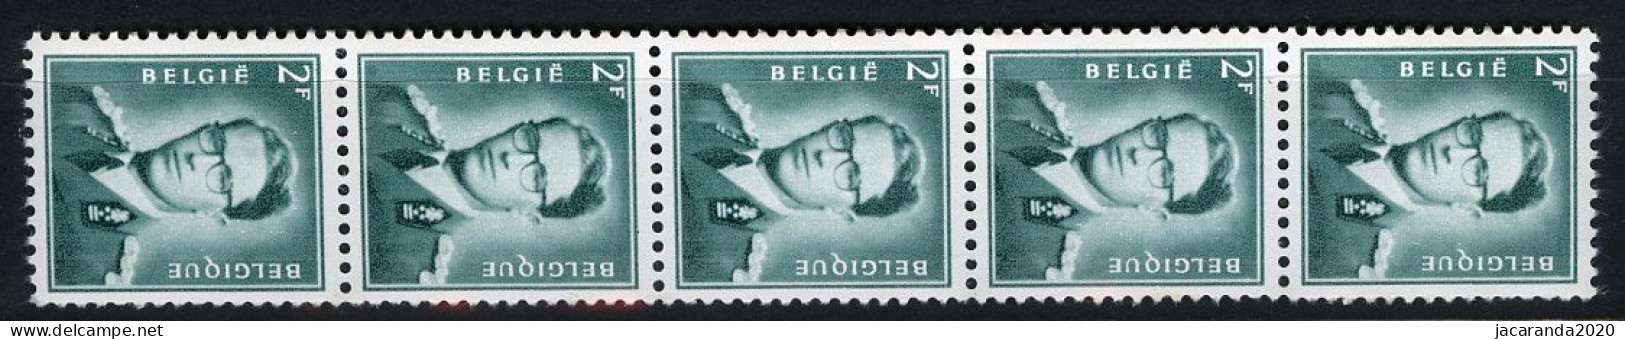 België R38 - Koning Boudewijn - 2F Blauwgroen - Vert-bleu - Strook Van 5 Met Nummer - Bande De 5 Avec Numéro - Coil Stamps